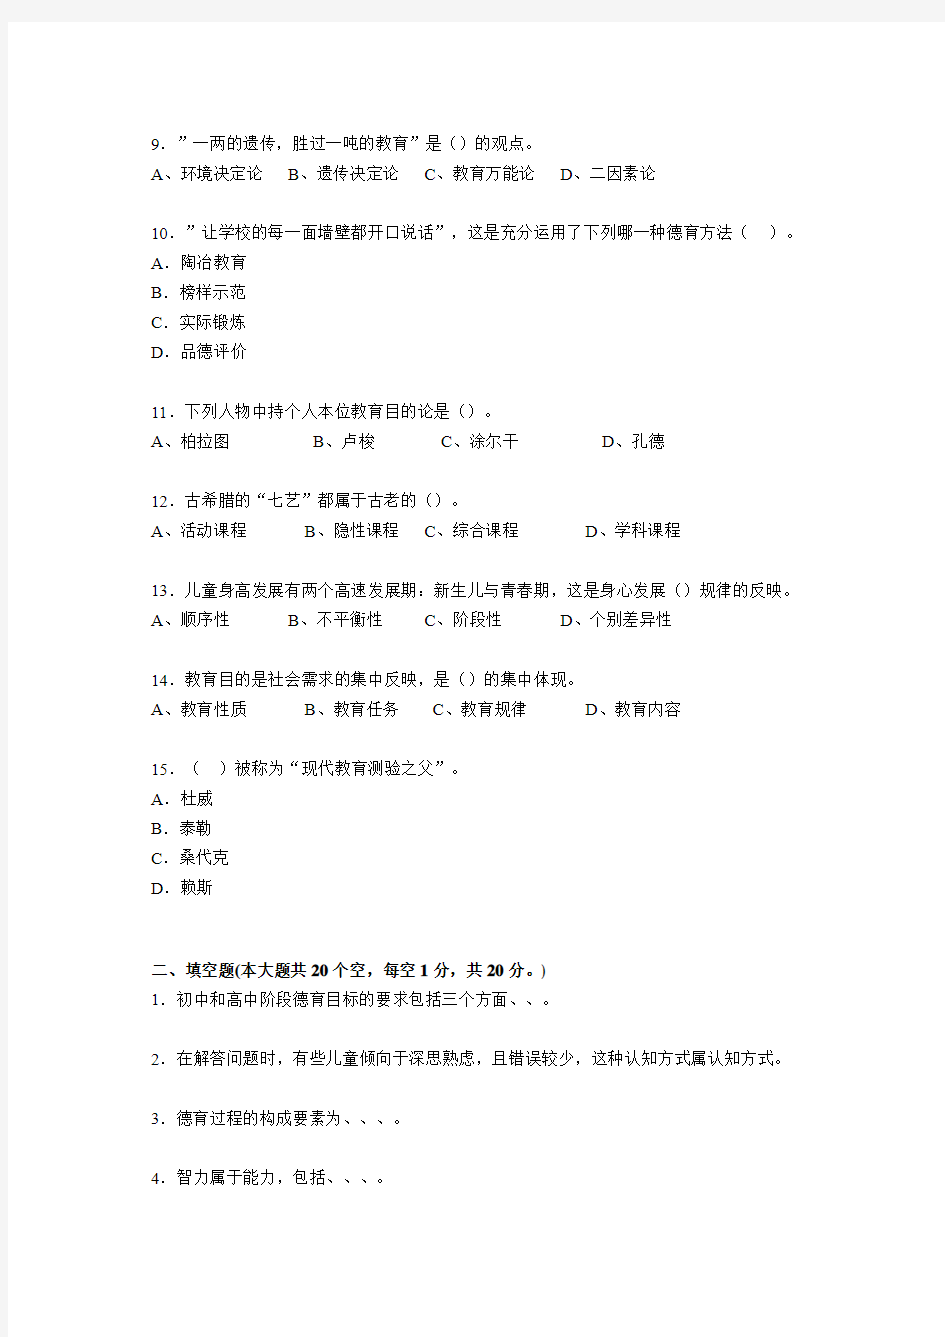 湖北省2015年下半年小学教师教师资格证考试《小学教育学》模拟试题及答案考试题